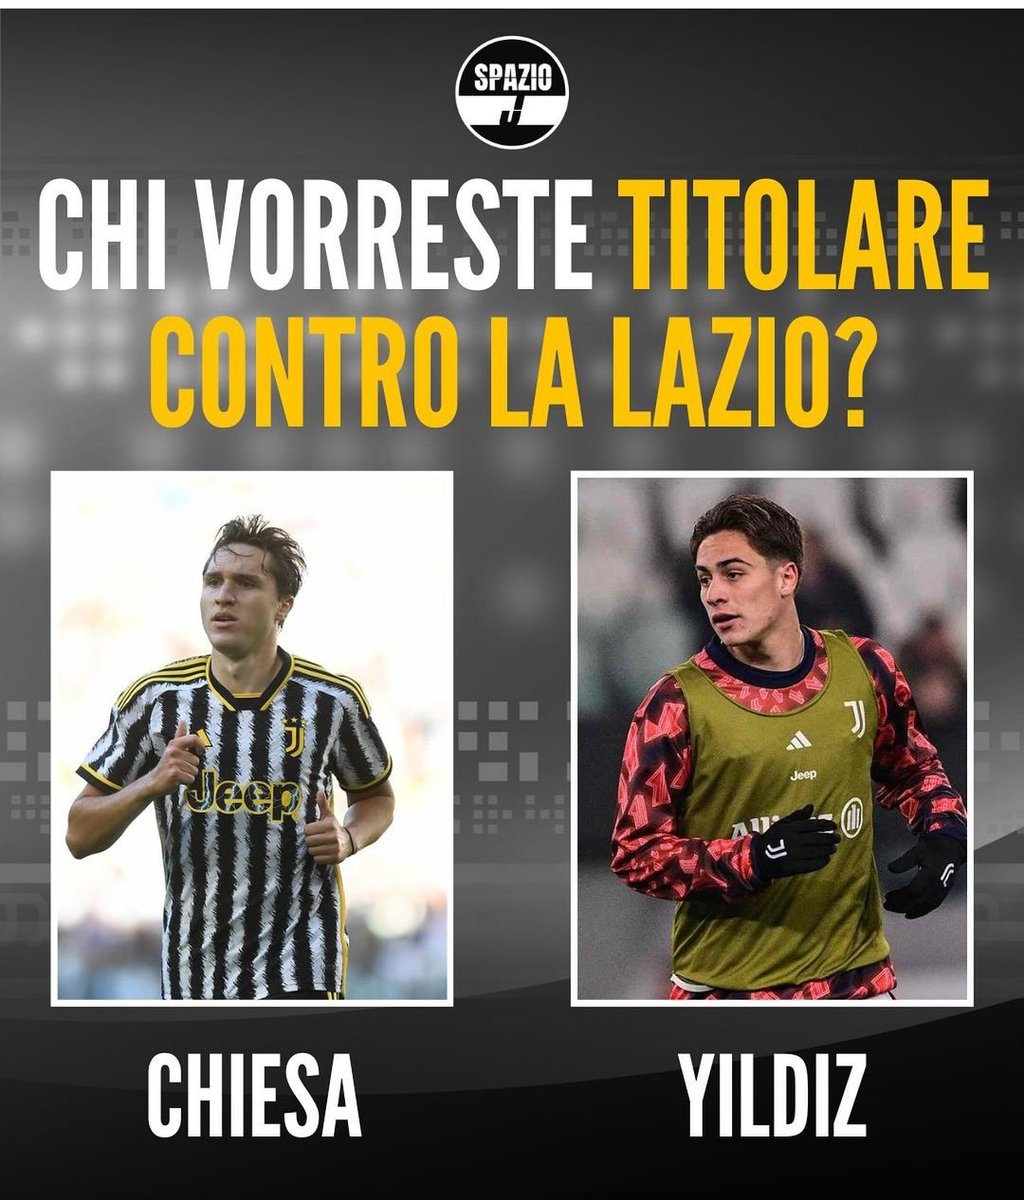 CHIESA O YILDIZ ? #Juventus #Calciomercato